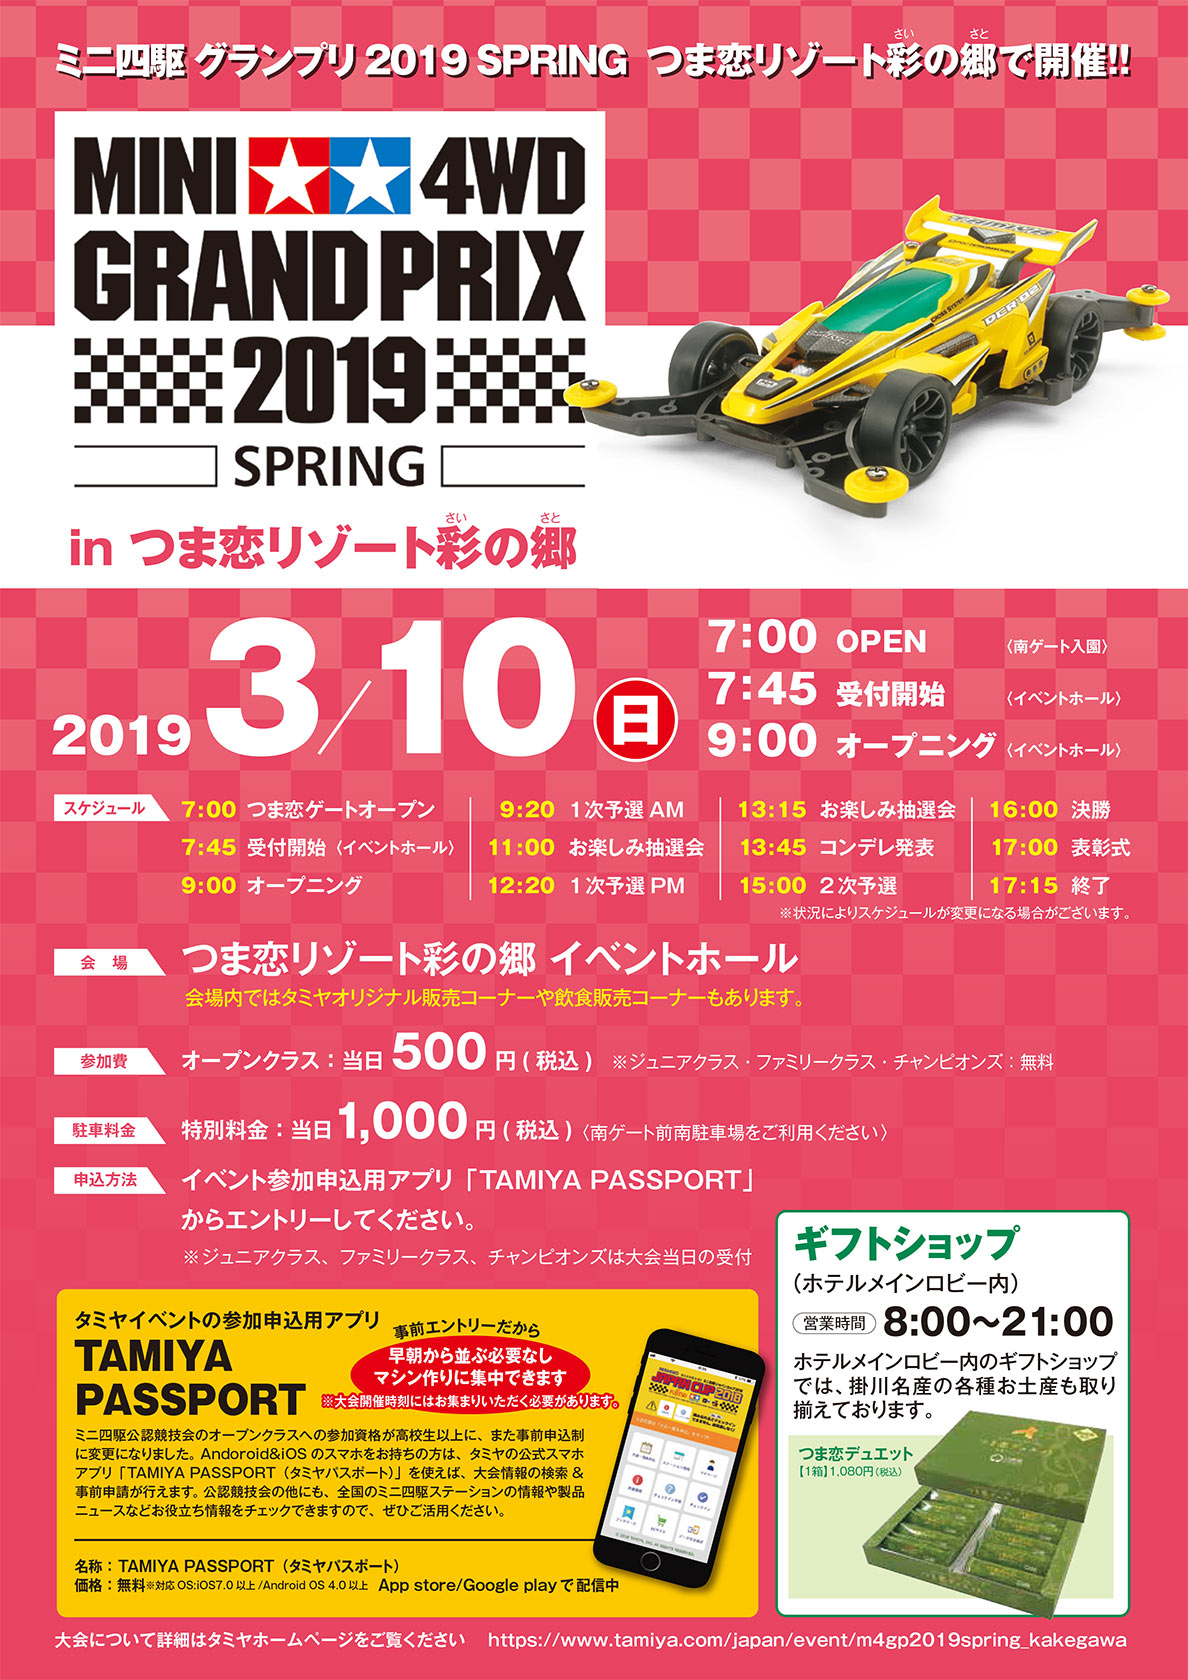 2019.3/10 ミニ四駆 グランプリ2019 SPRIING つま恋リゾート彩の郷で開催！